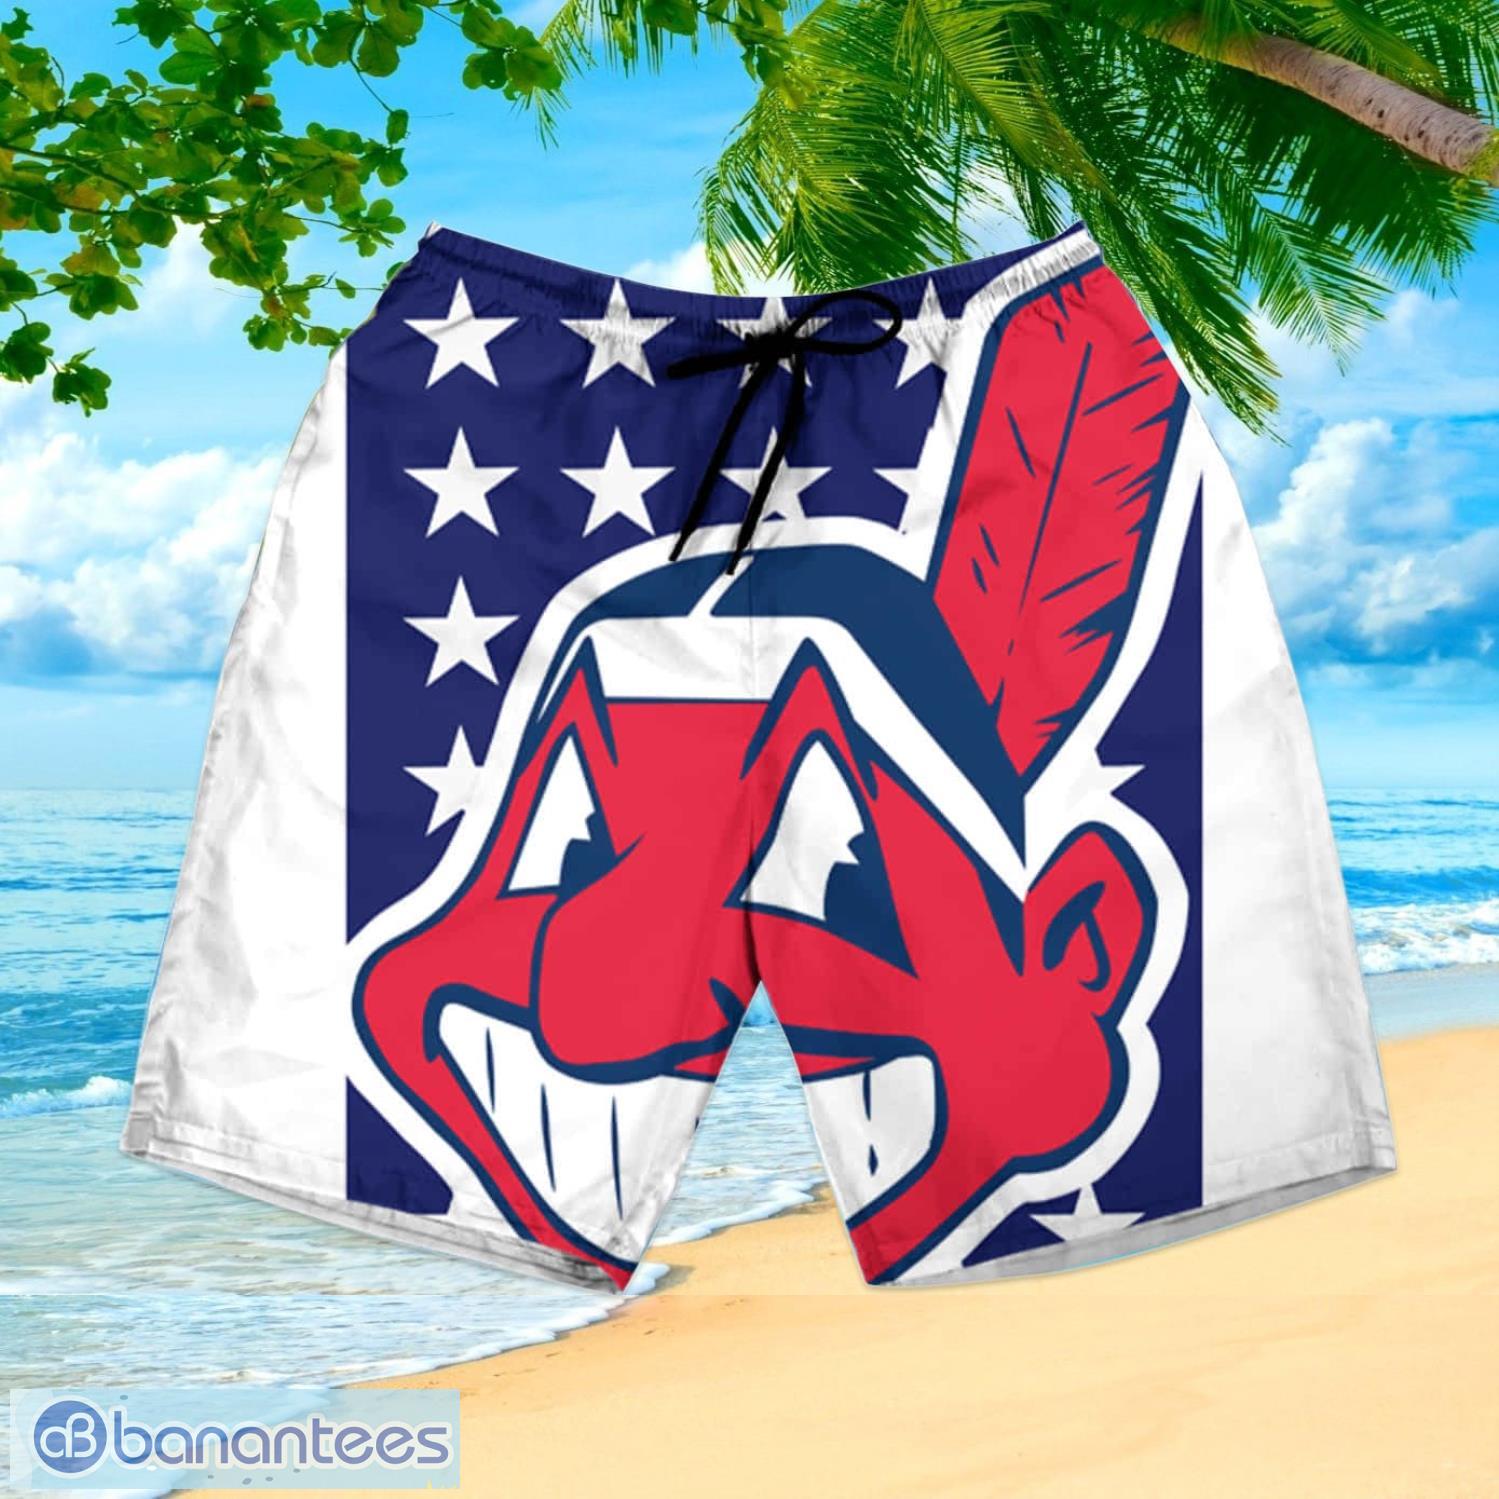 Cleveland Indians MLB Tropical Summer Gift Hawaiian Shirt And